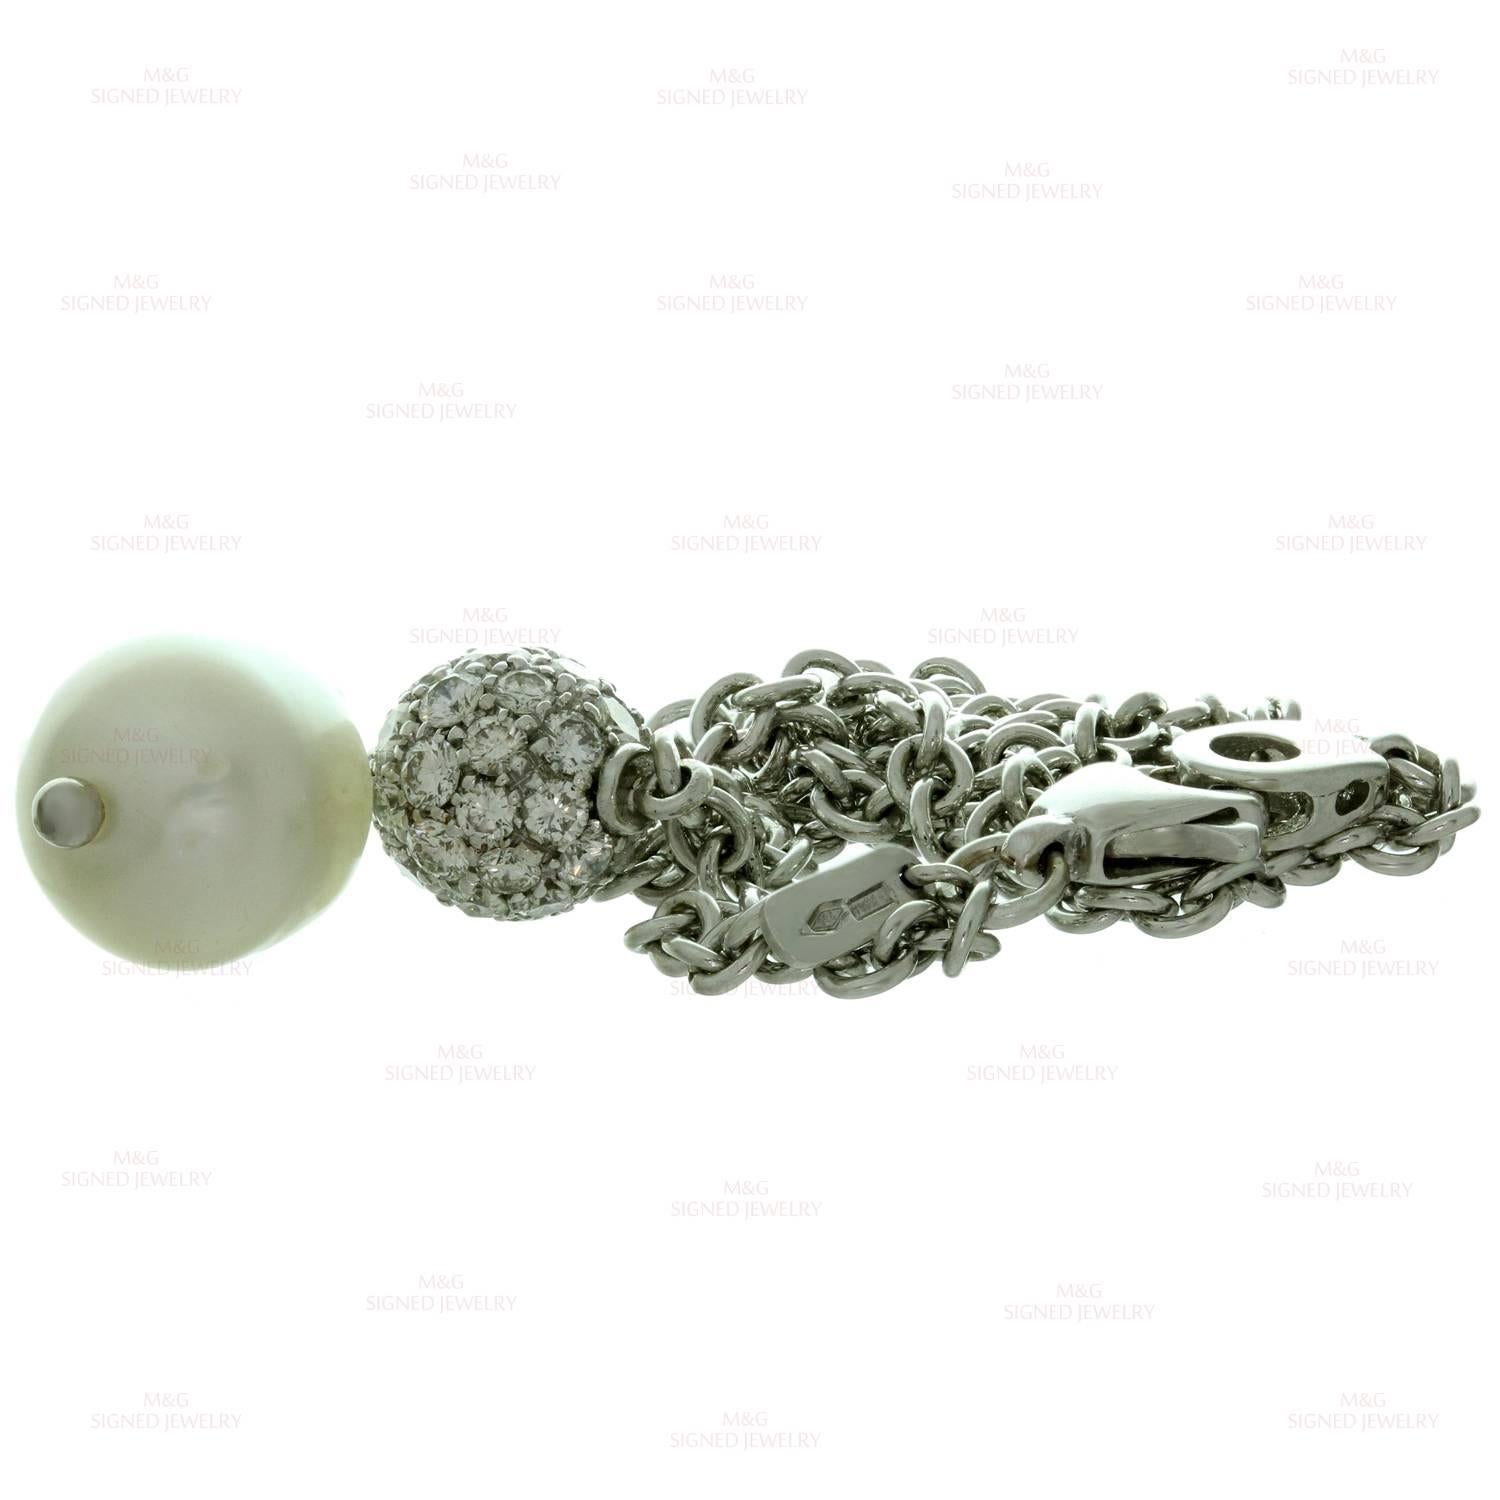 Chantecler Diamond South Sea Baroque Pearl Pendant White Gold Necklace 3